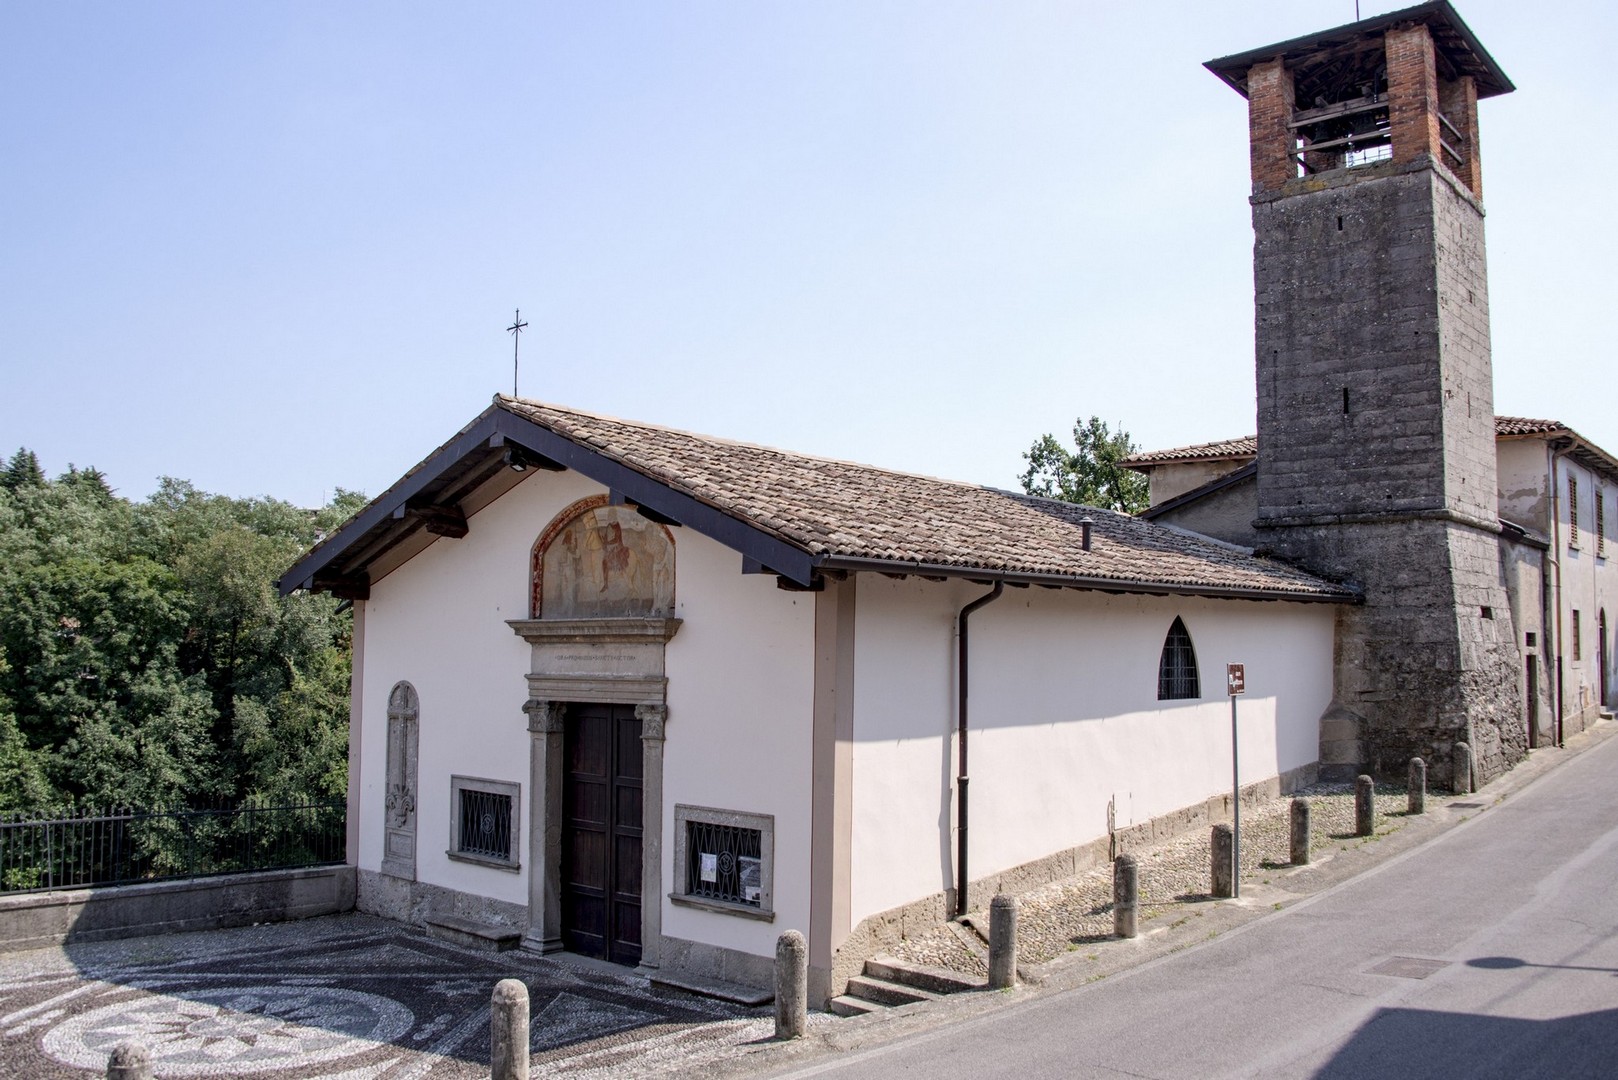 Santuario e Chiesa rupestre di San Vittore Martire, Brembate (BG) - Fonte portale 'I Luoghi del Cuore' (3)